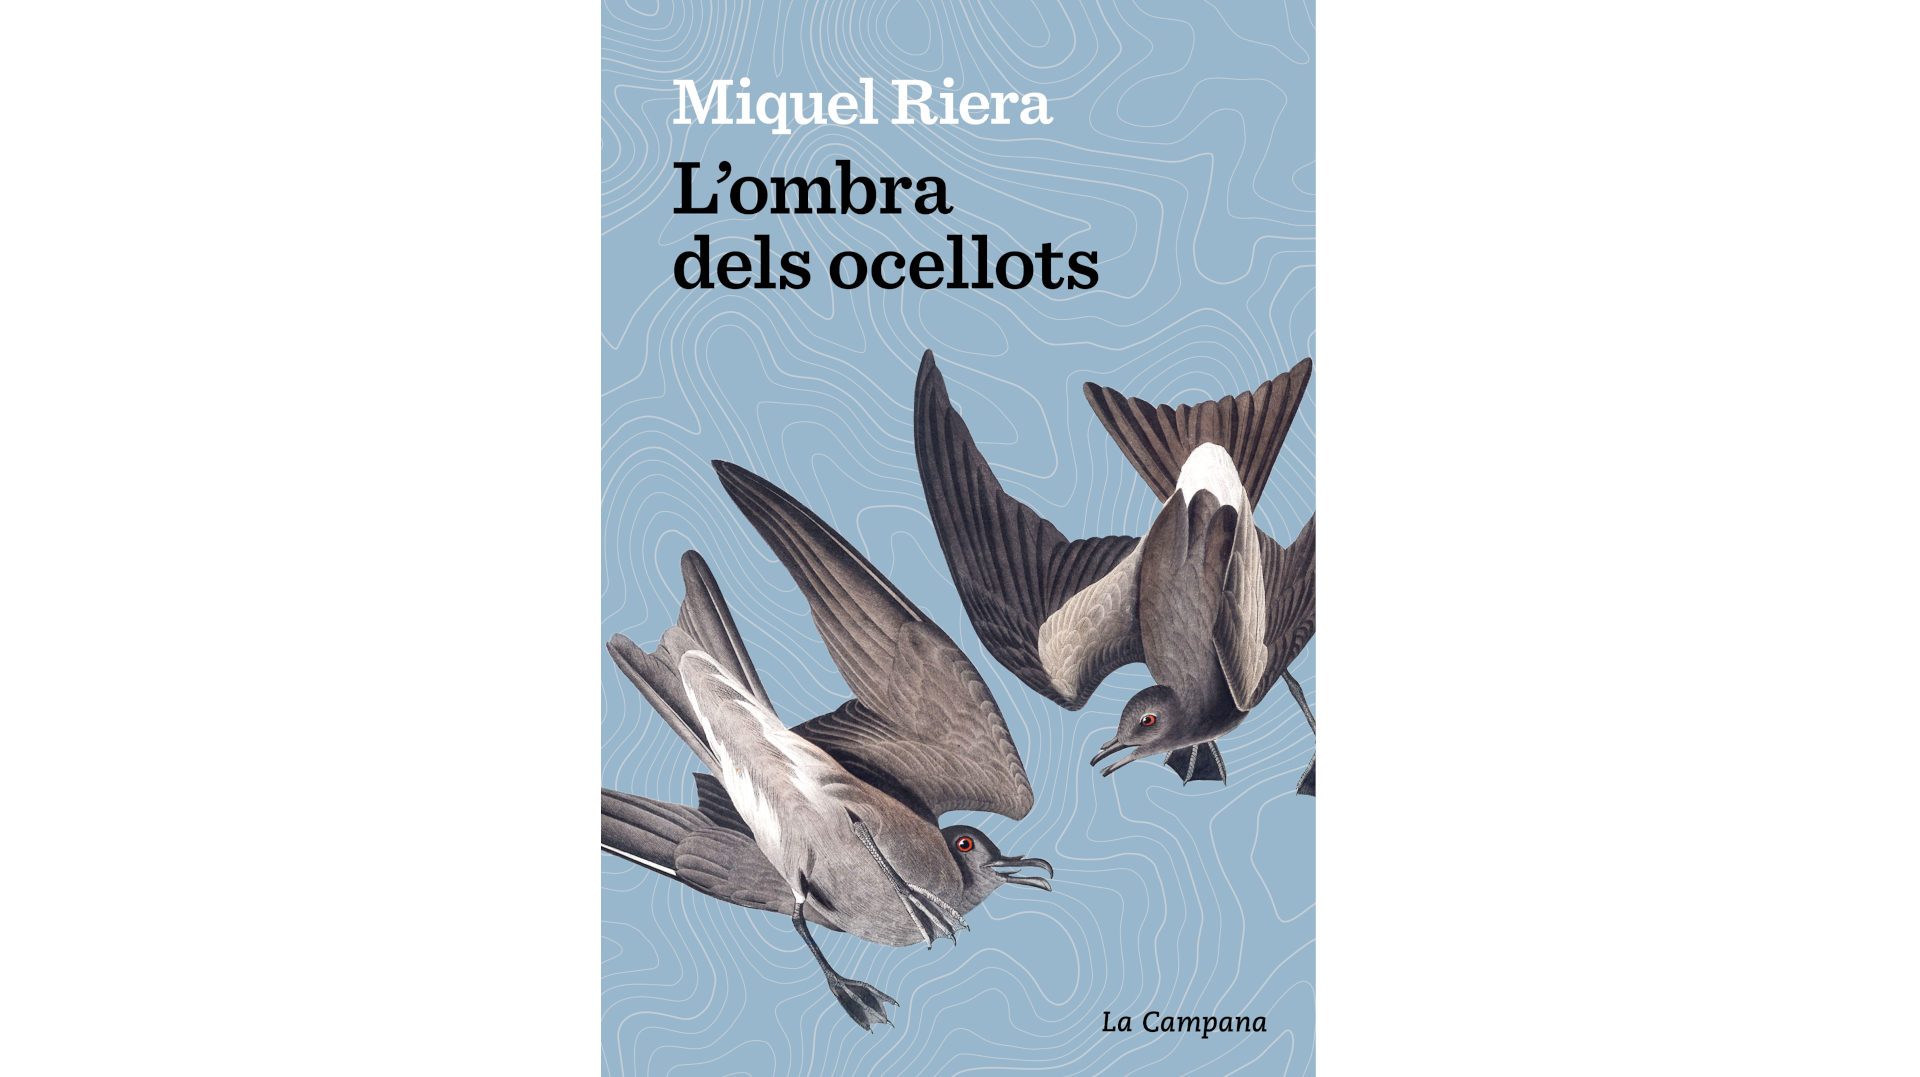 Presentació del llibre “L’ombra dels ocellots, de Miquel Riera”